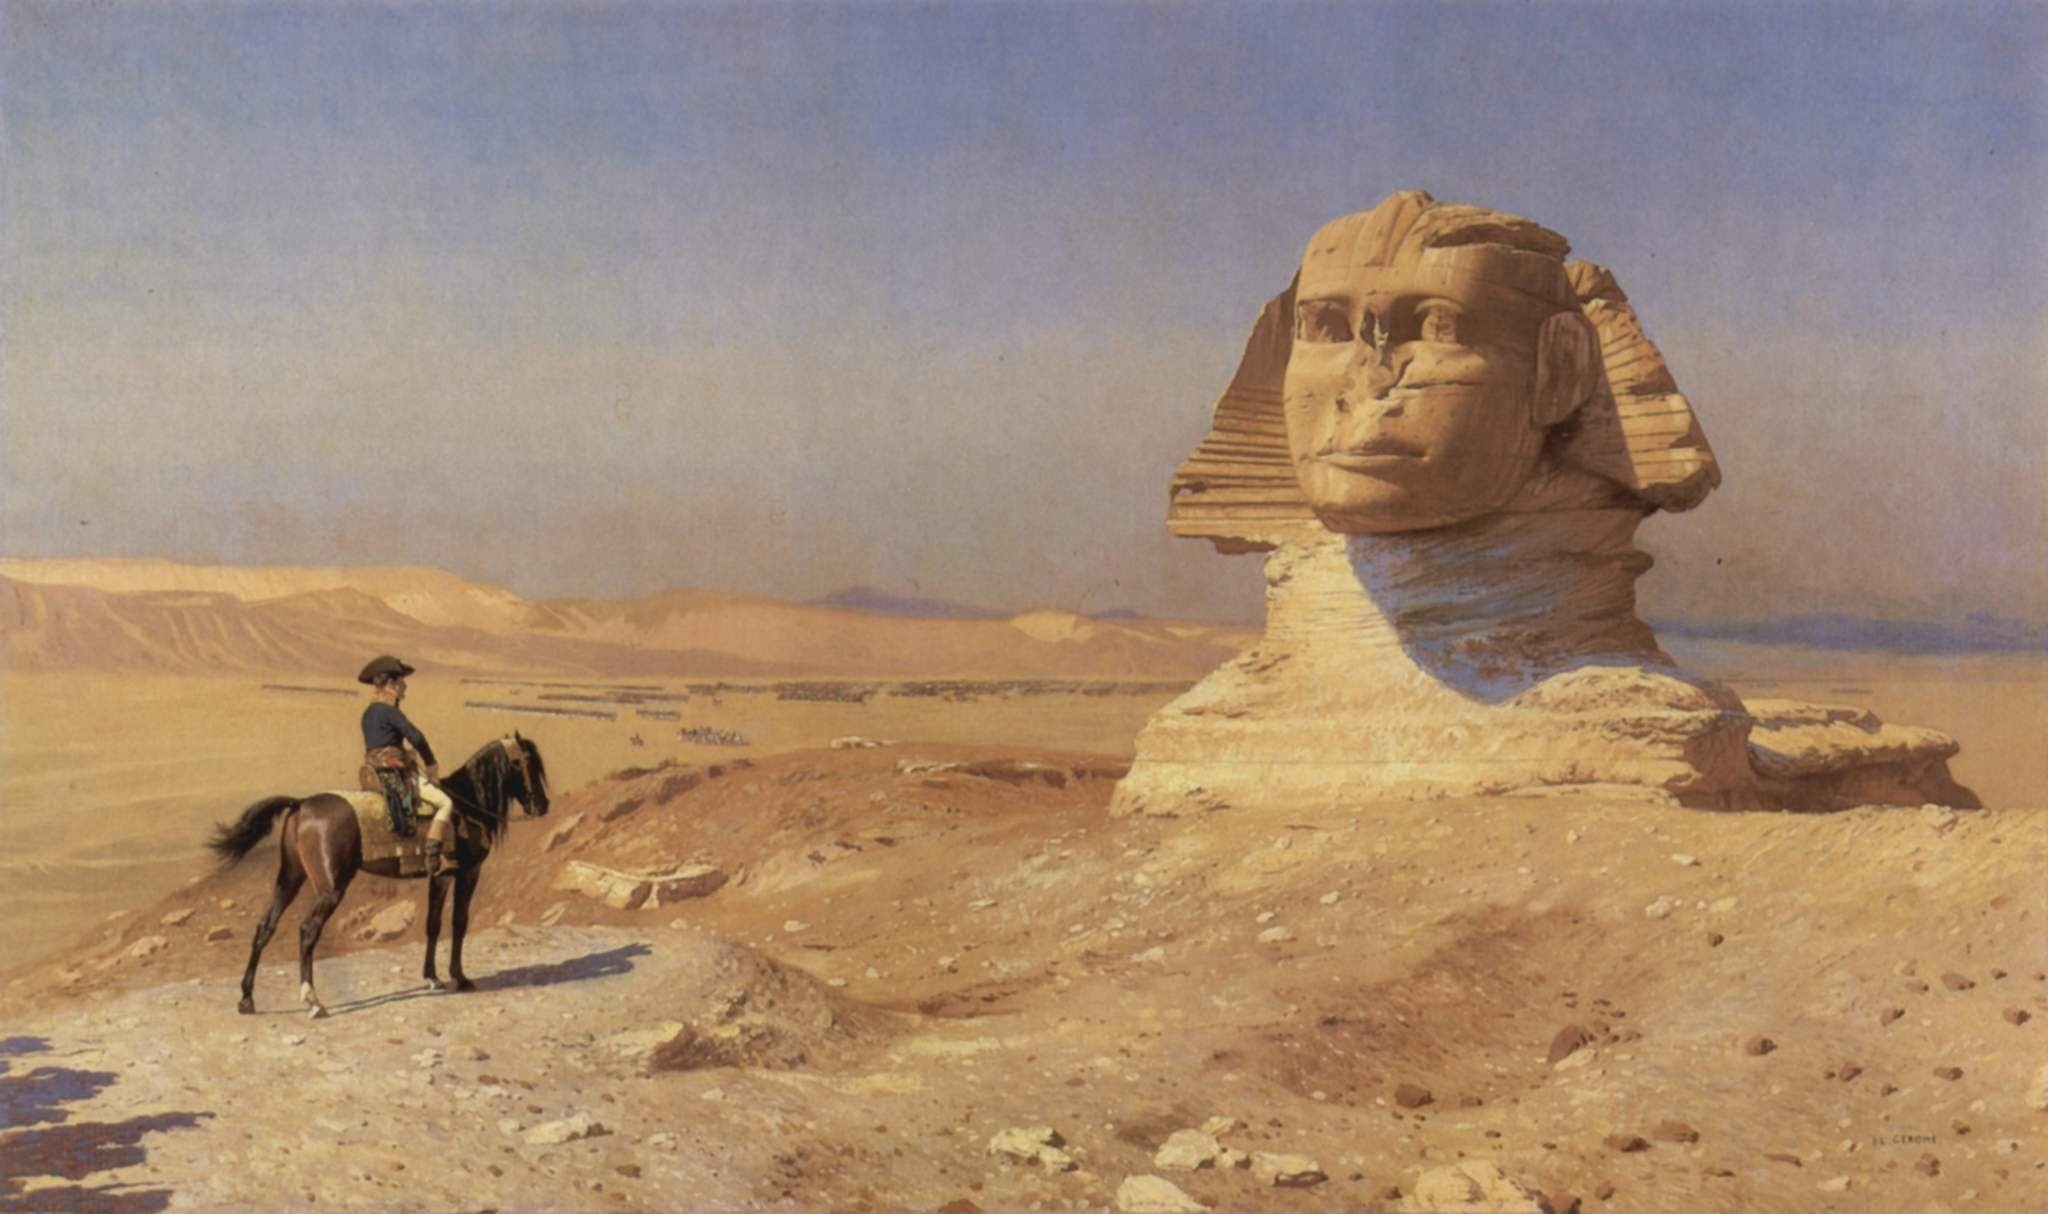 Quadro retrata a presença de tropas de Napoleão Bonaparte no Egito (Foto: Reprodução)